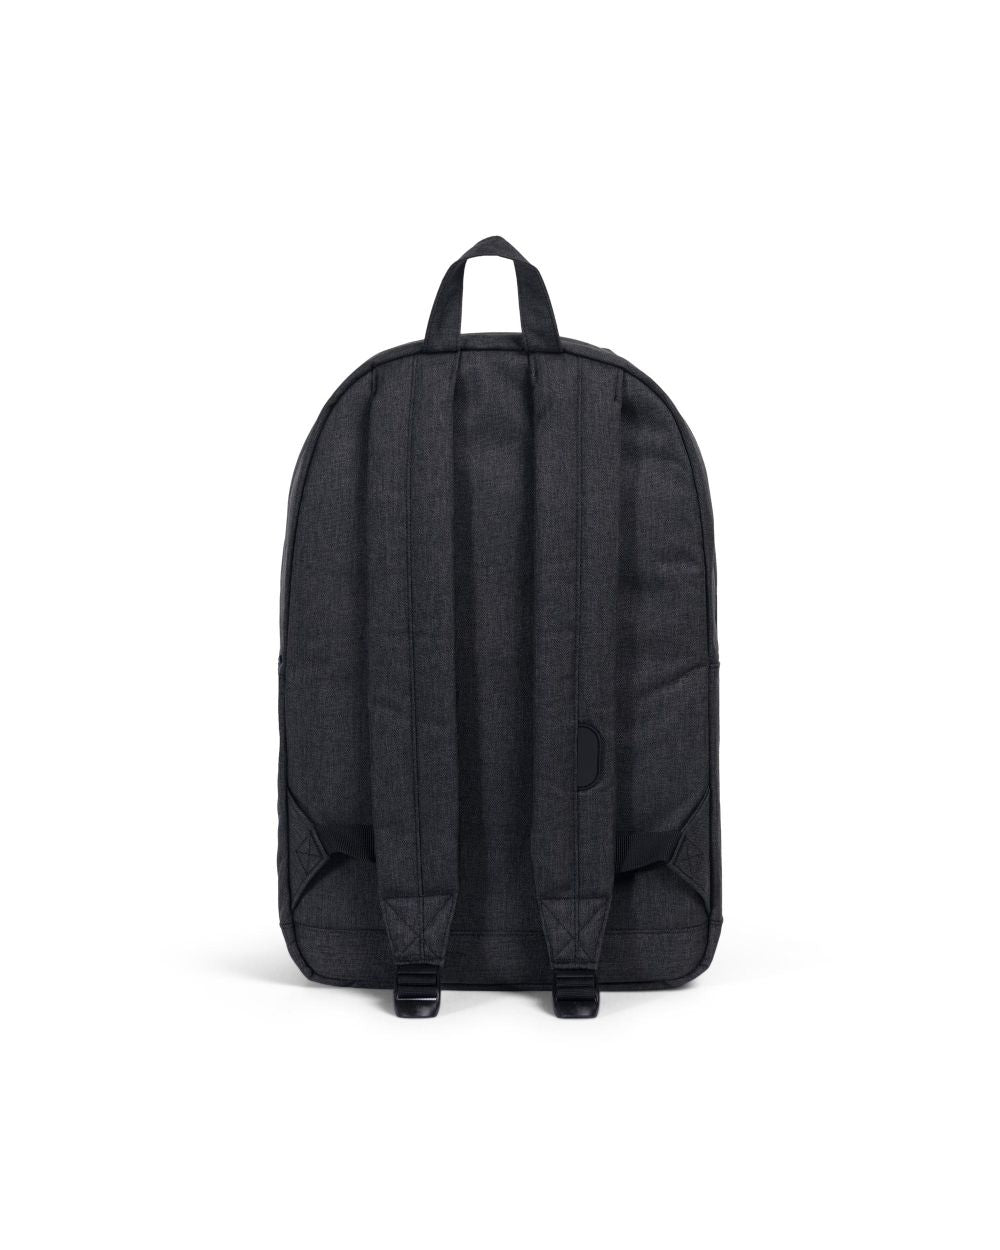 Herschel Supply Co. - Pop Quiz Backpack, Black Crosshatch/Black Rubber